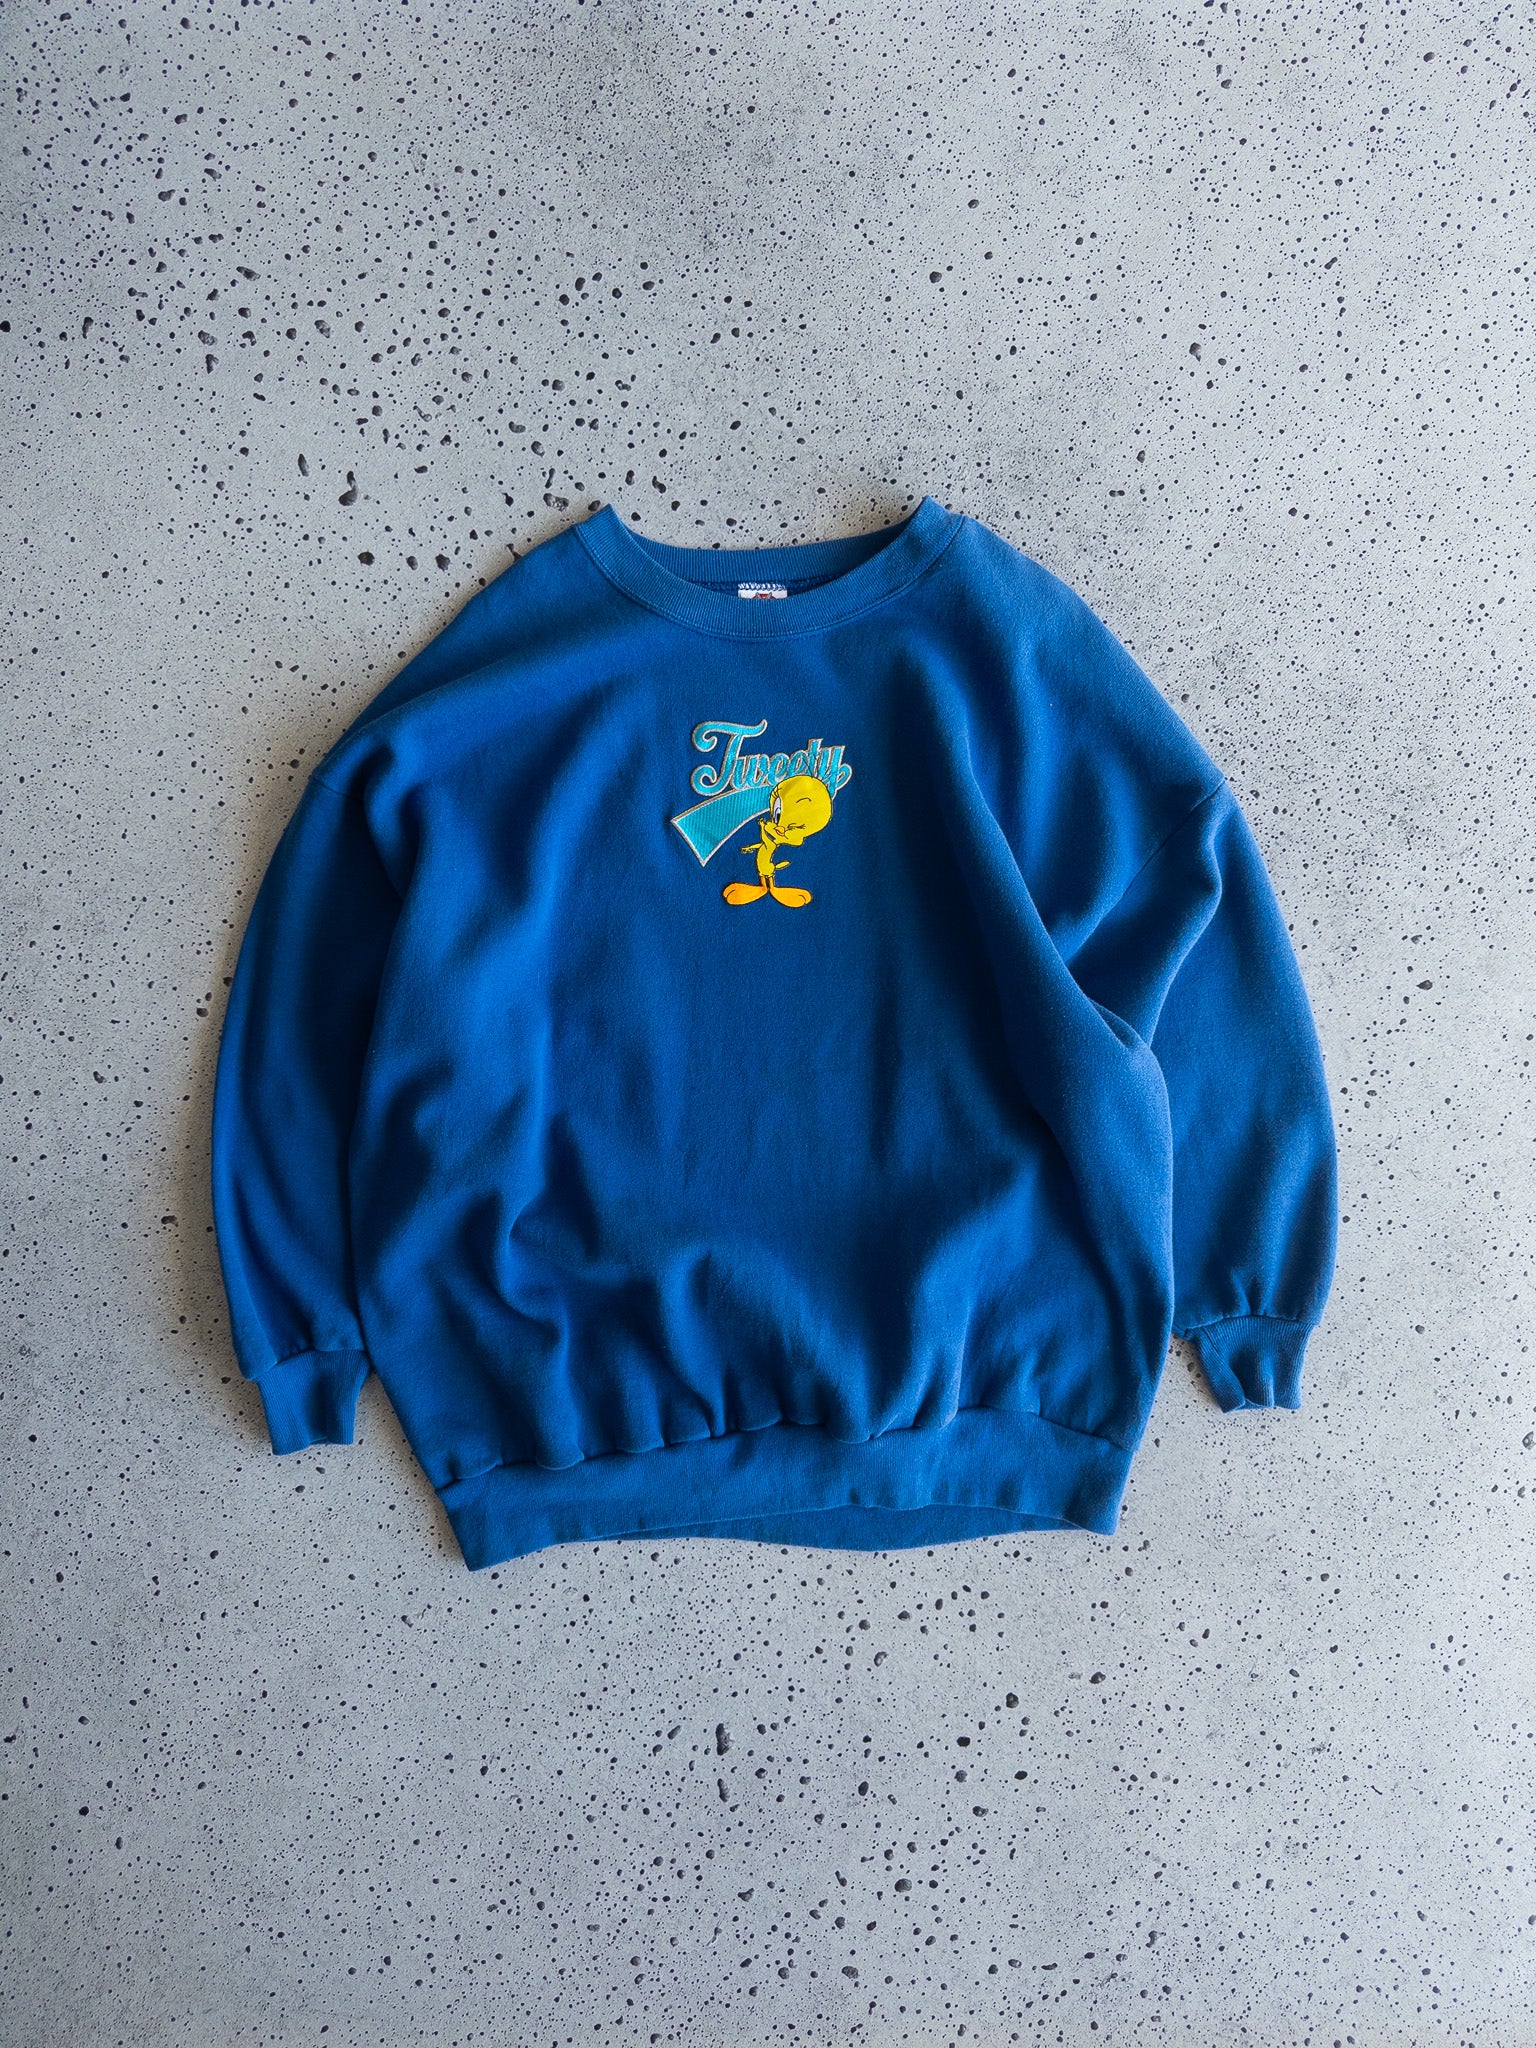 Vintage Tweety Sweatshirt (XL)